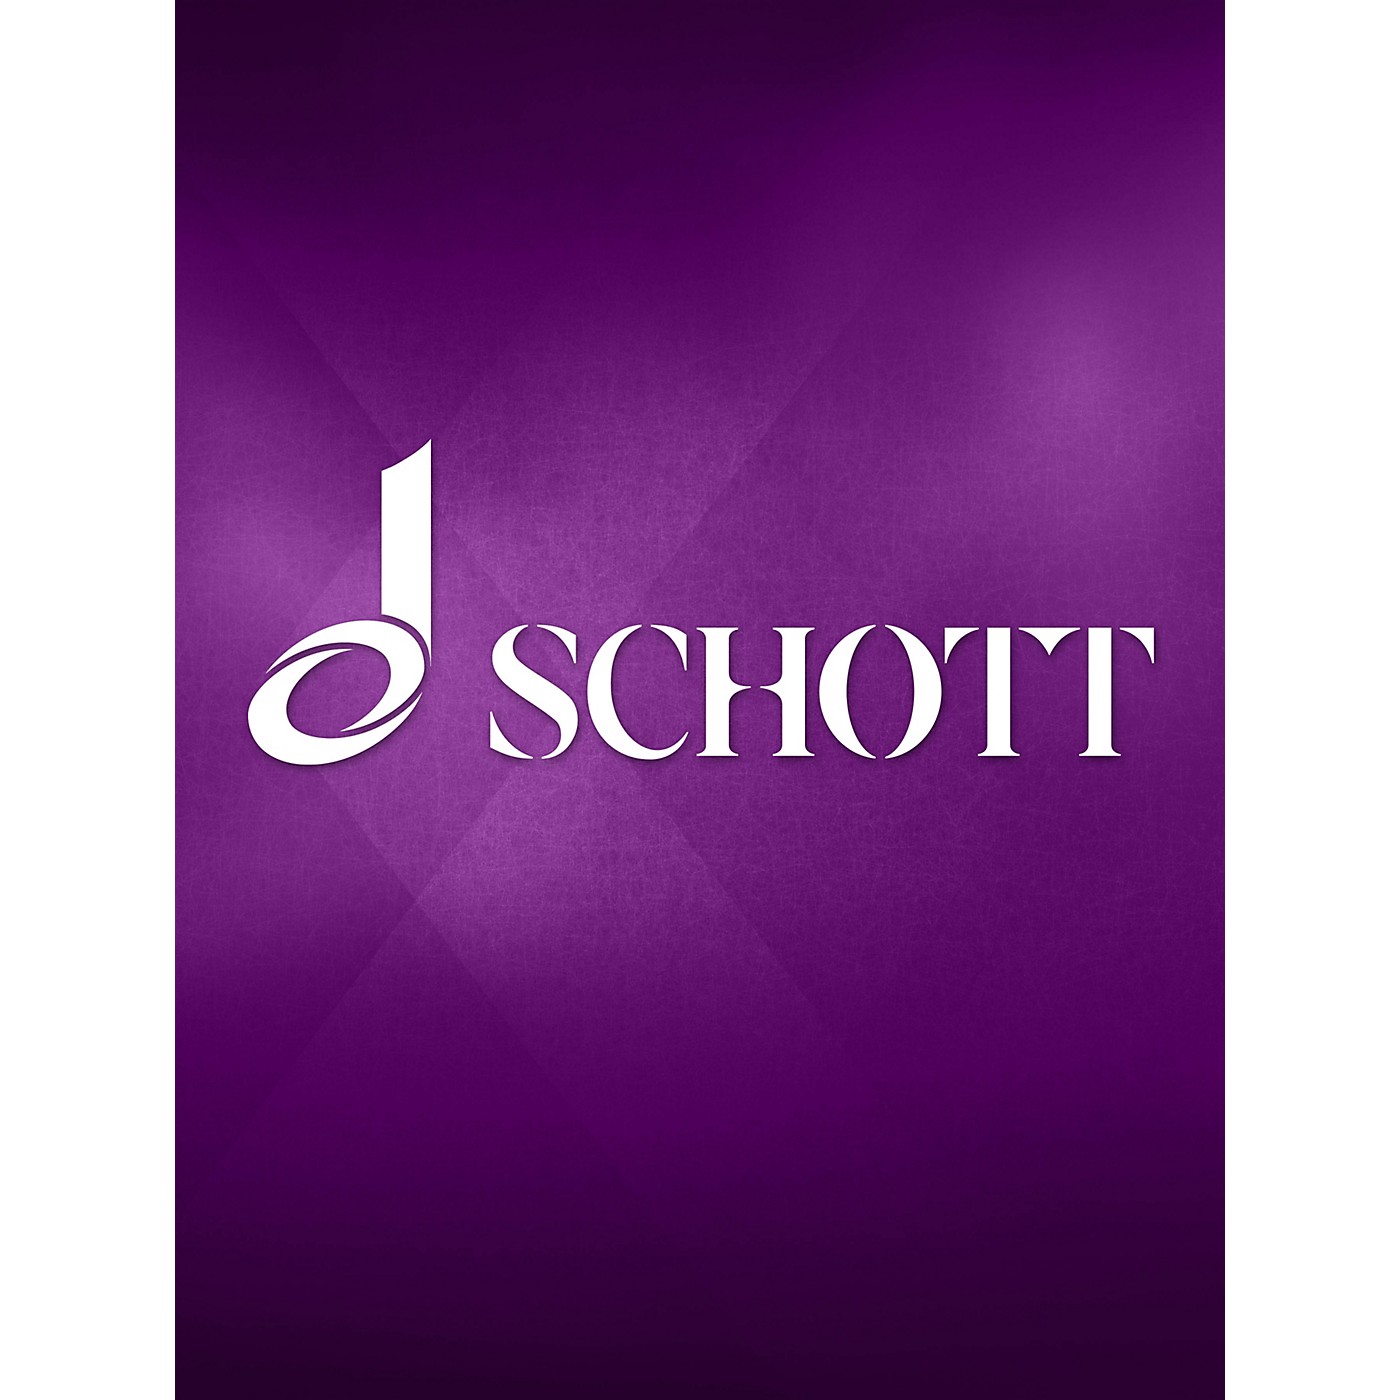 Schott Frühling und Sommerbeginn (German Orff Score) Schott Series Composed by Gunild Keetman thumbnail